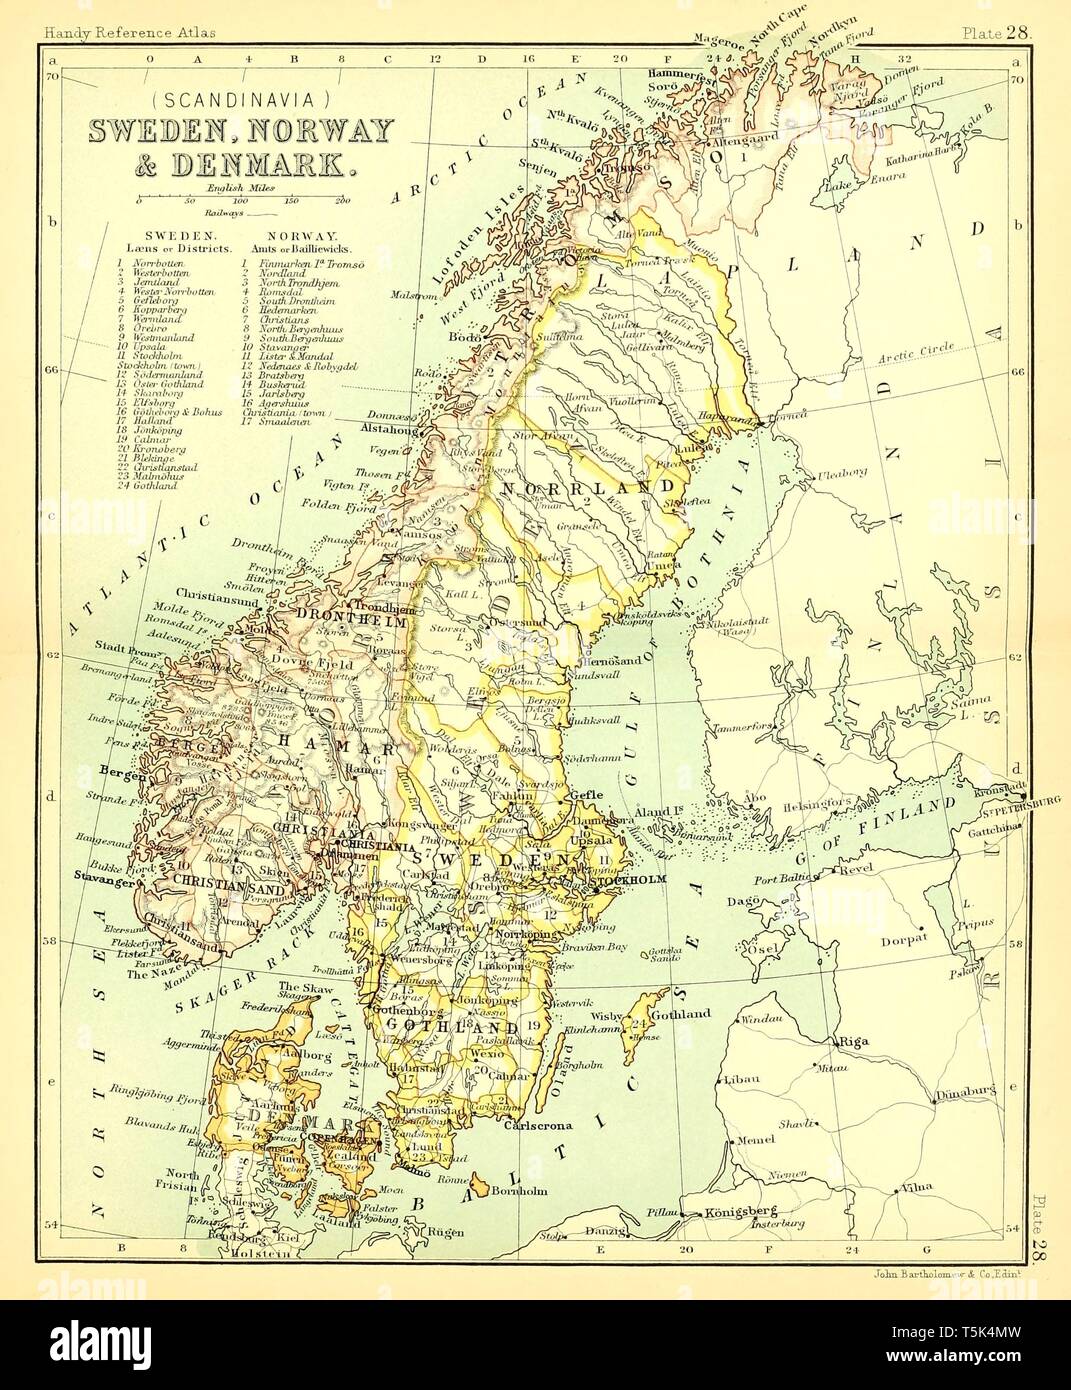 Bella vintage disegnato a mano illustrazioni mappa della Scandinavia dal vecchio libro. Può essere usato come un poster o un elemento decorativo per la progettazione di interni. Foto Stock